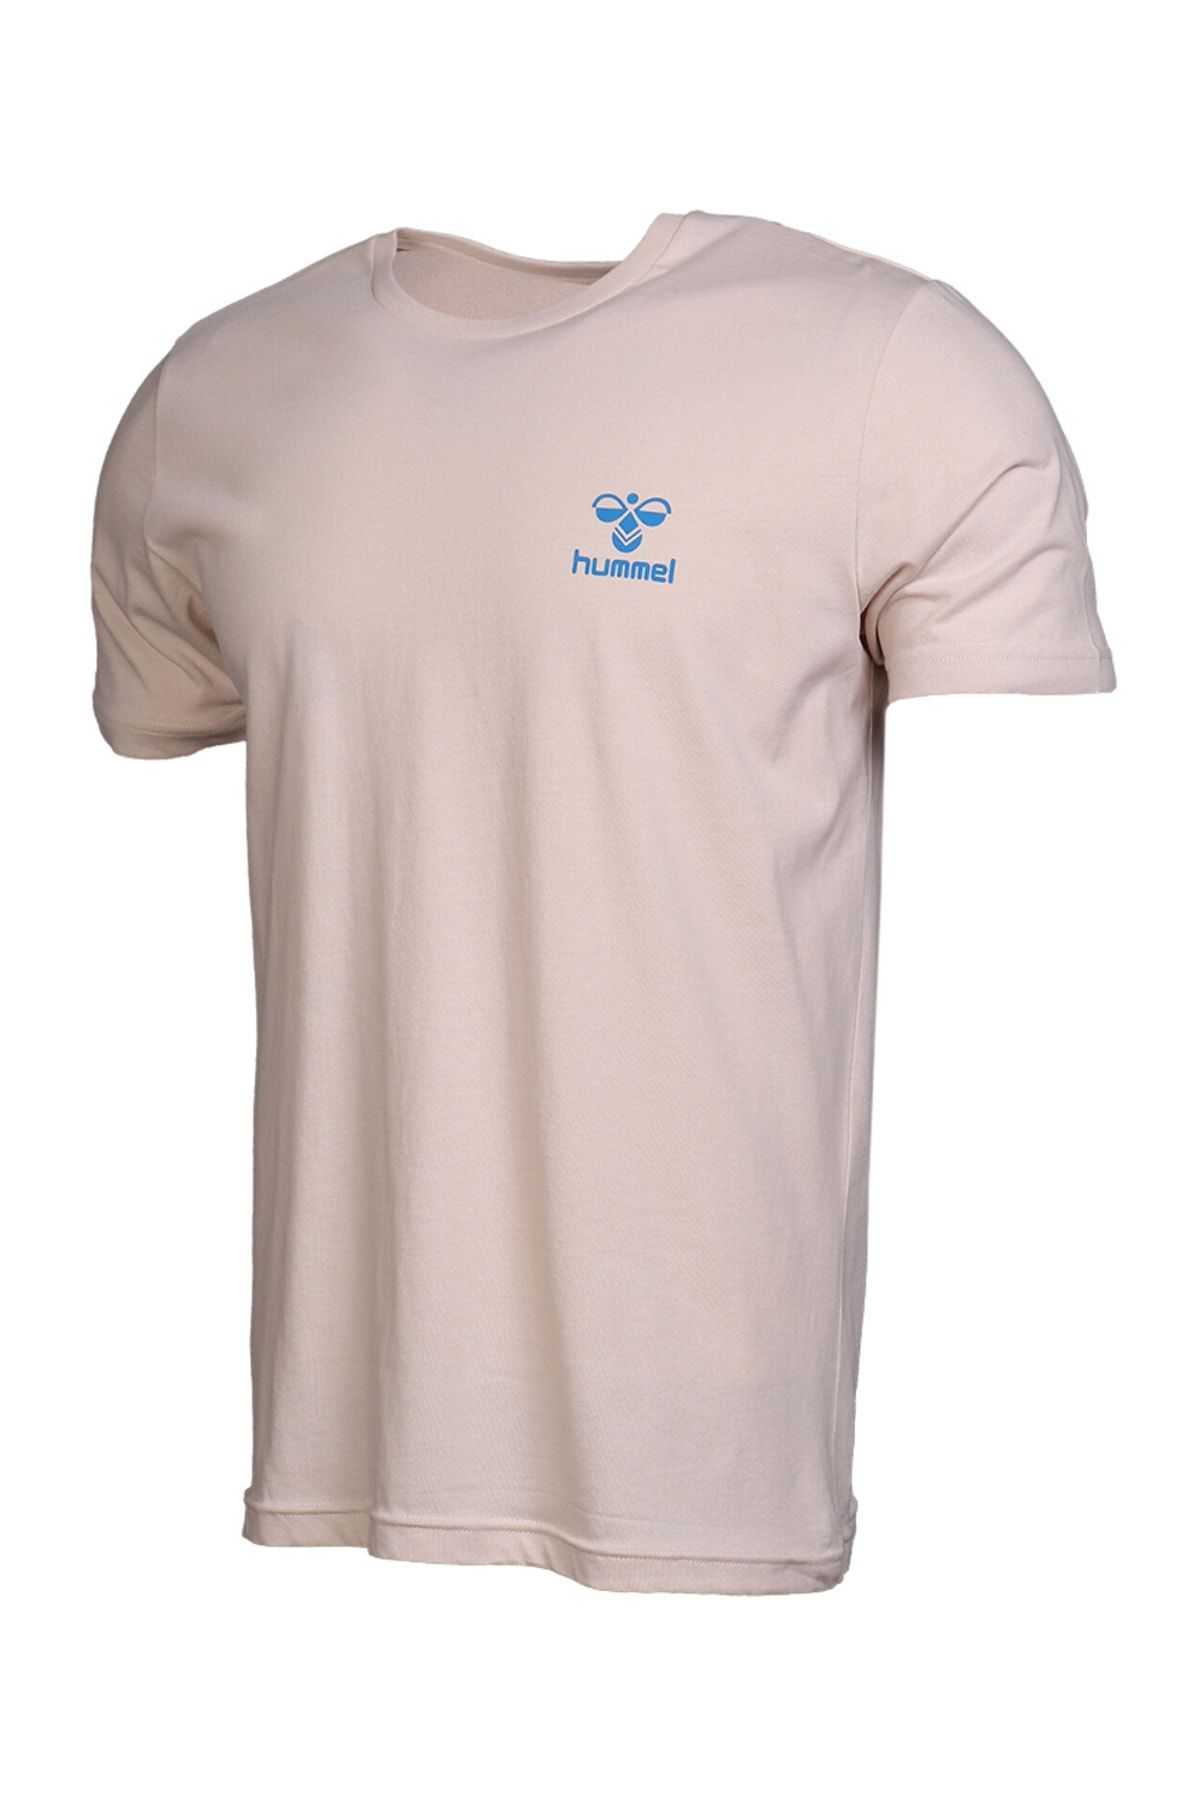 HUMMEL Kevins - Beige Men's Short Sleeve T-Shirt - Trendyol